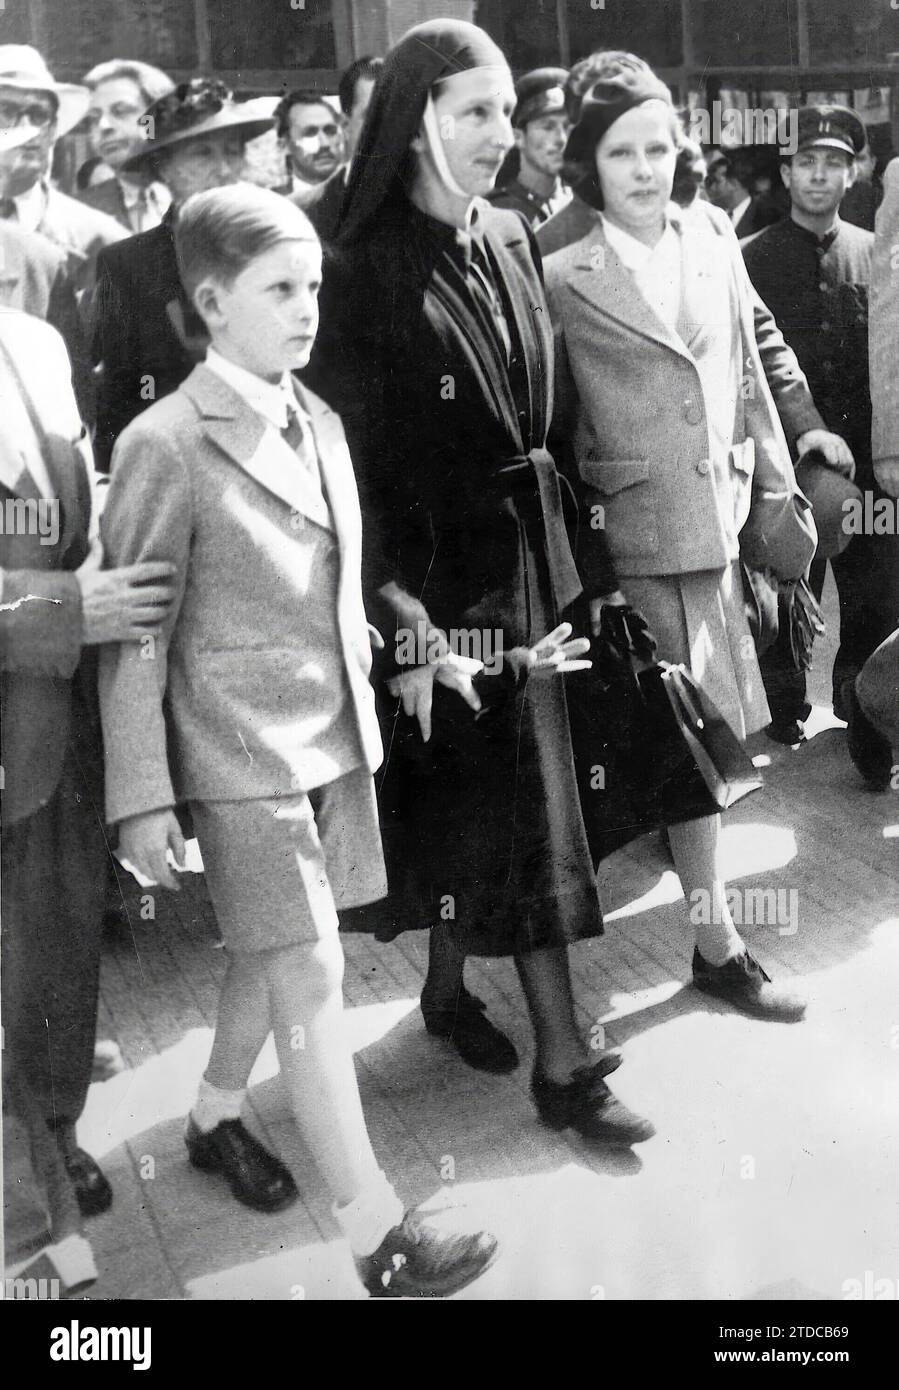 Le roi Siméon de Bulgarie, sa sœur la princesse Maria Luisa et la reine mère Jeanne à leur arrivée à la gare de Sirkedji à Istanbul sur le chemin de l'exil. 26.09. 1946. Crédit : Album / Archivo ABC Banque D'Images